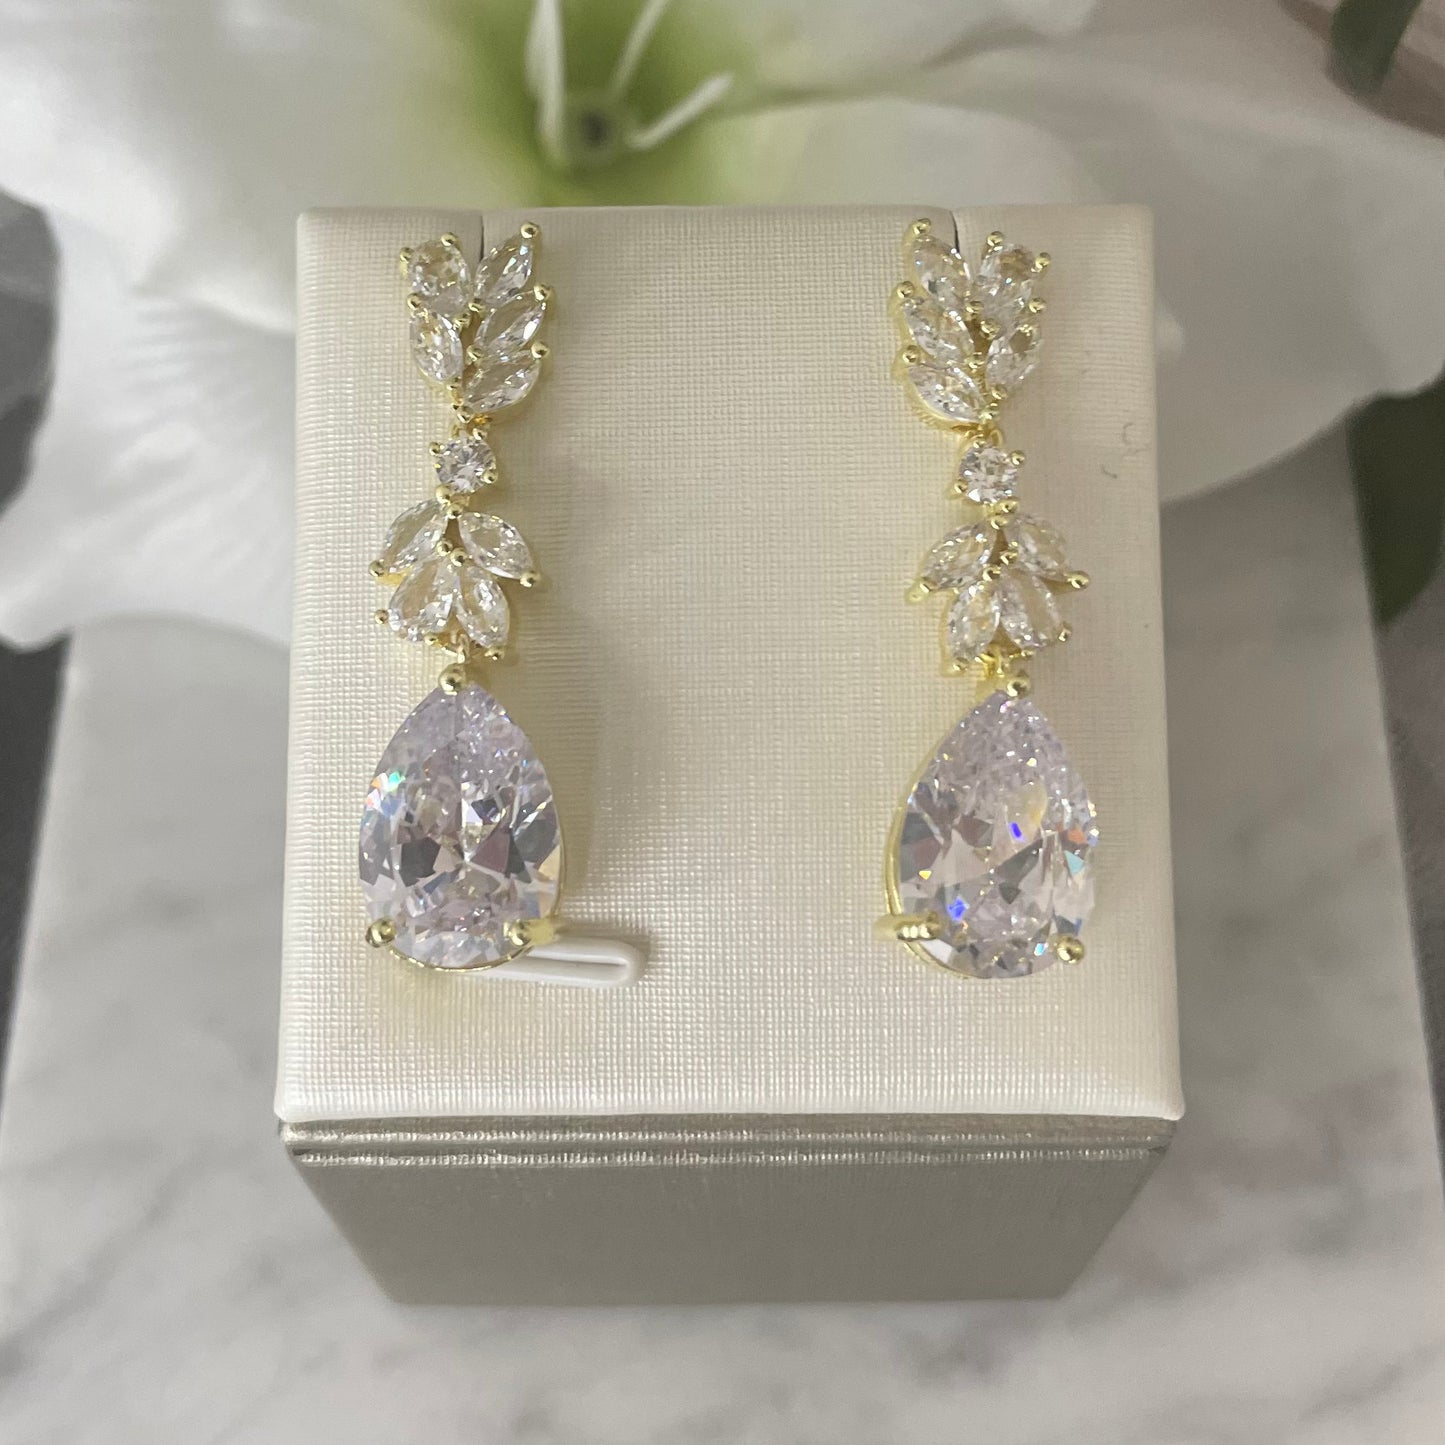 Paris crystal earrings